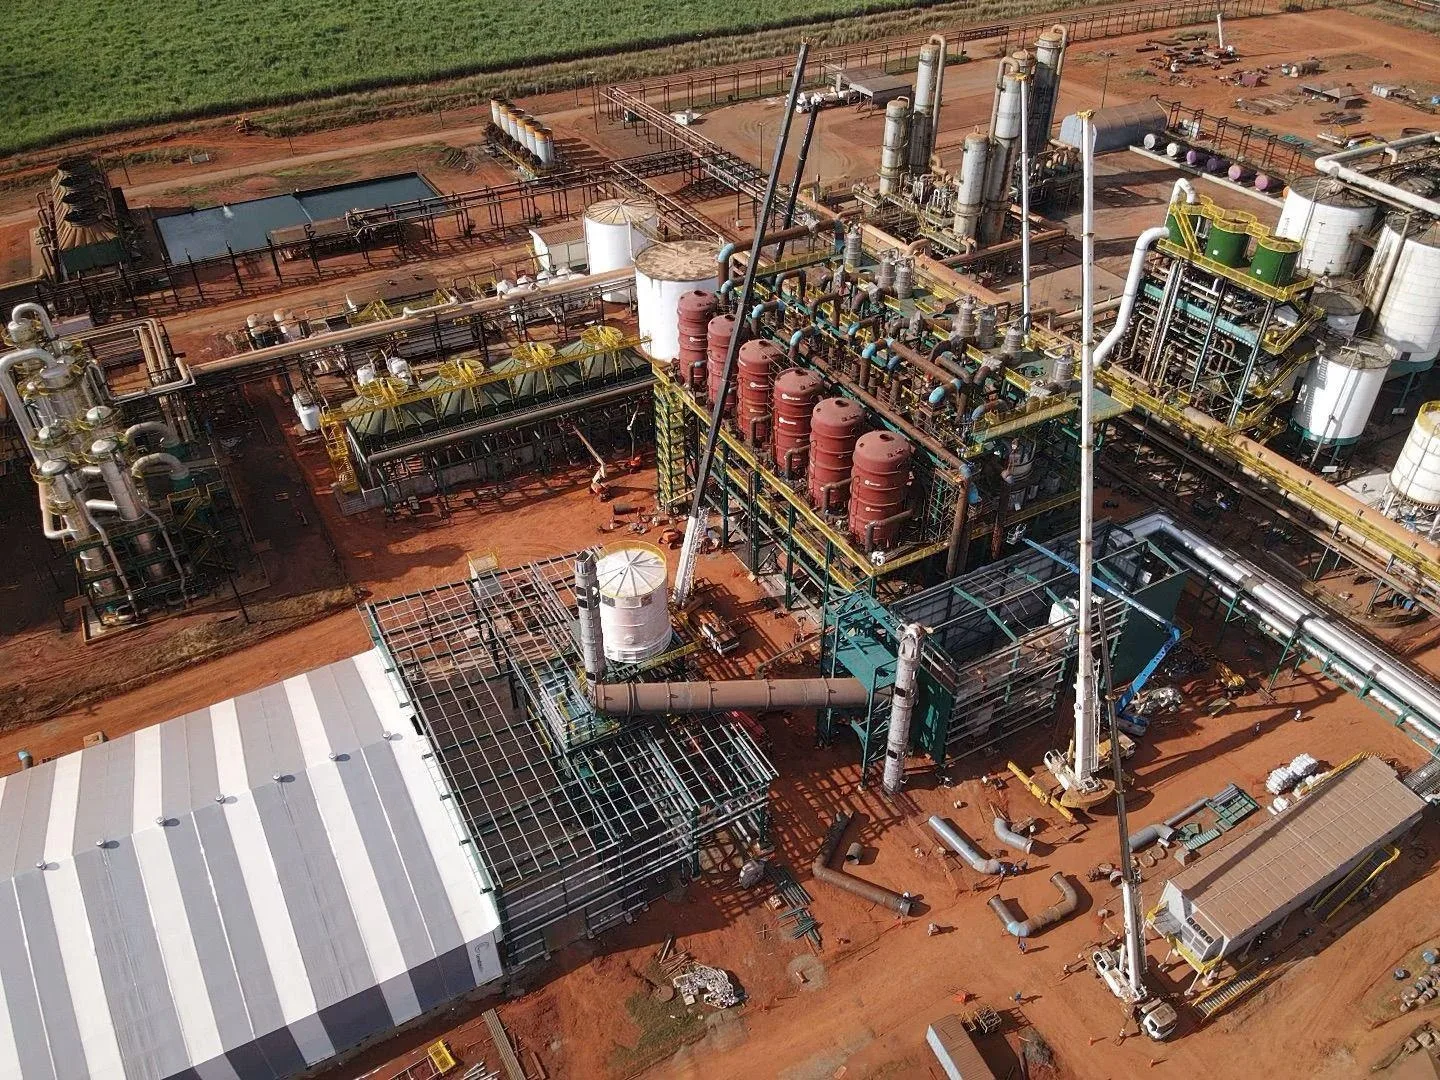 Cerradinho Bioenergia anuncia investimento de R$ 189 milhões em expansão de fábrica de açúcar